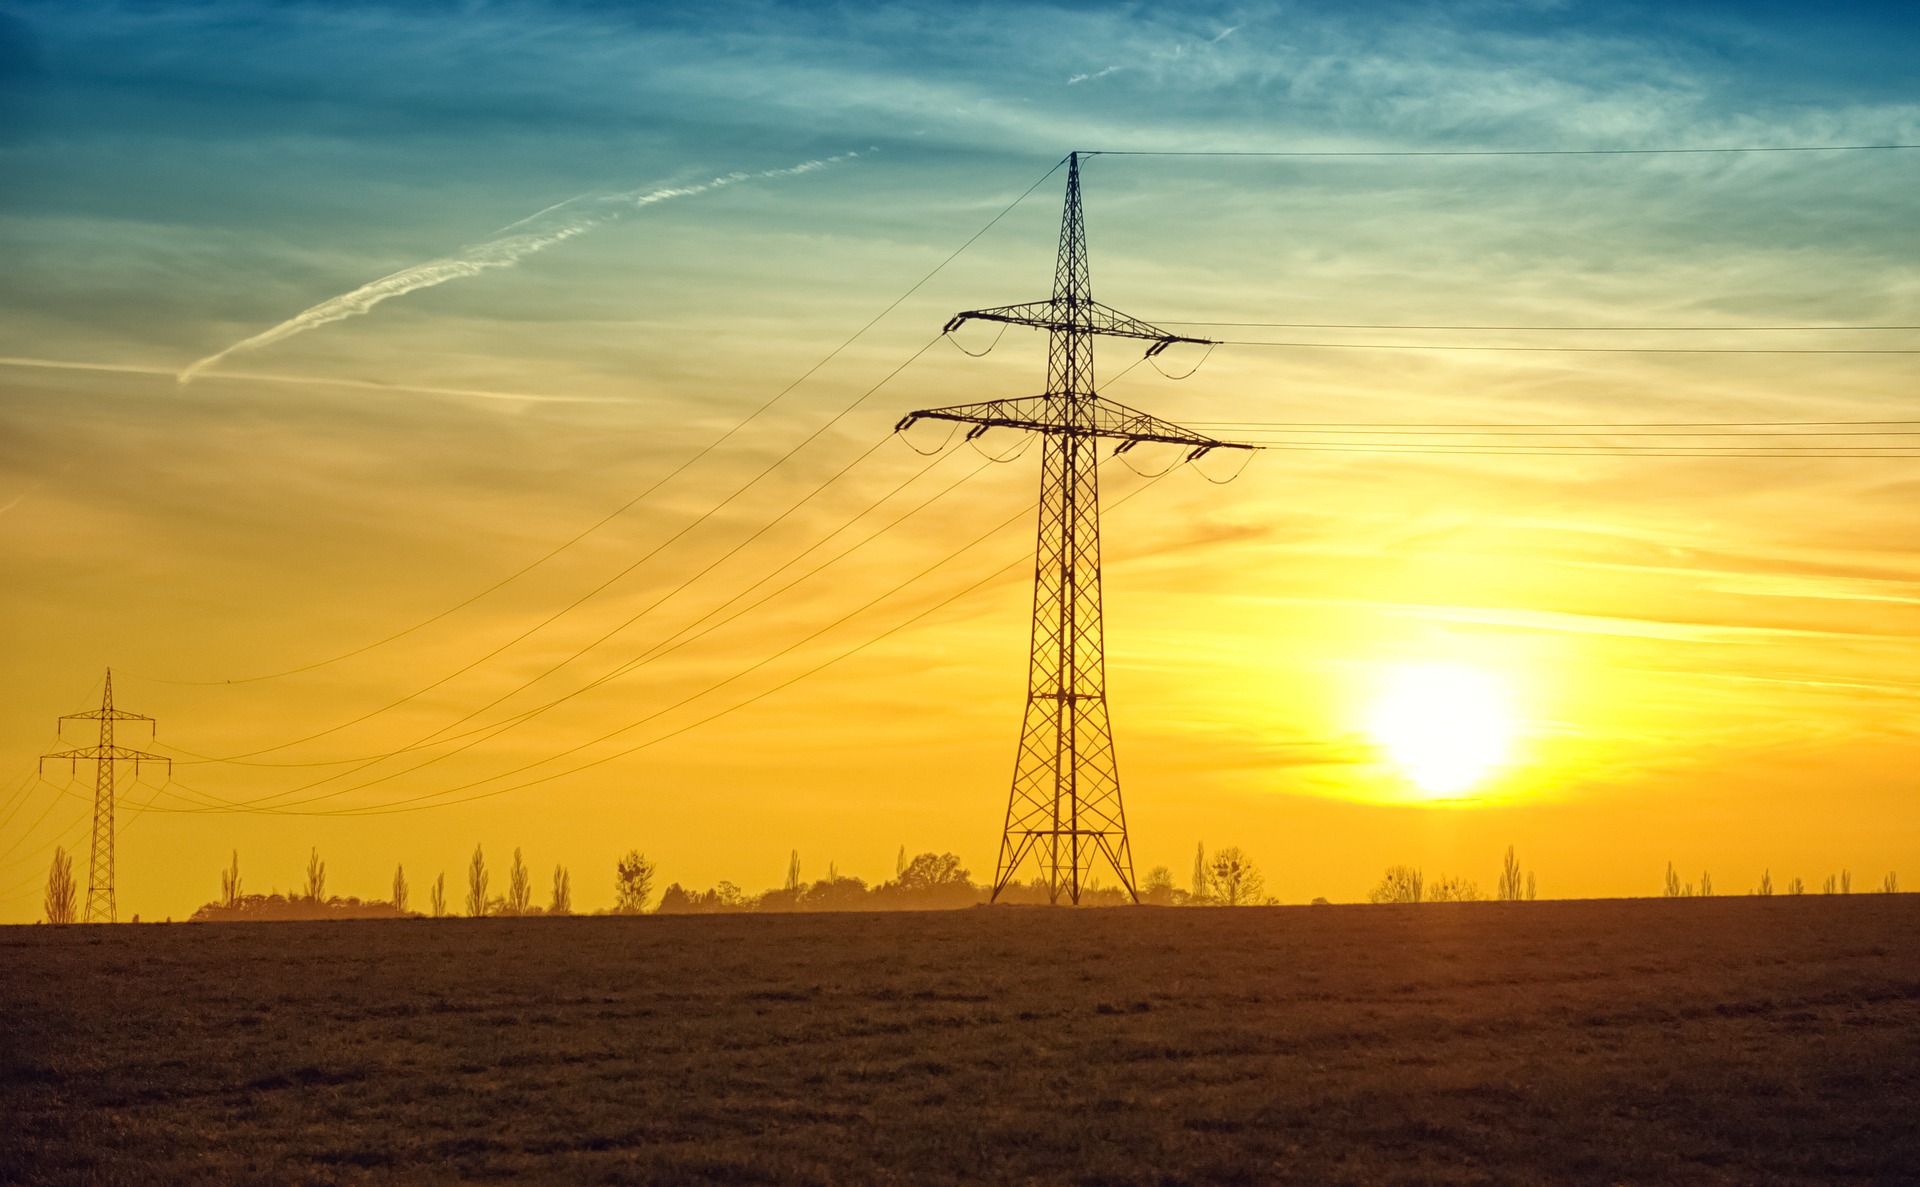 Calor eleva consumo de energia elétrica no Brasil, aponta CCEE. Na imagem: Foto à contraluz de torres com linhas de transmissão de energia elétrica, e pôr-do-sol ao fundo (Foto: Nicole Köhler/Pixabay)